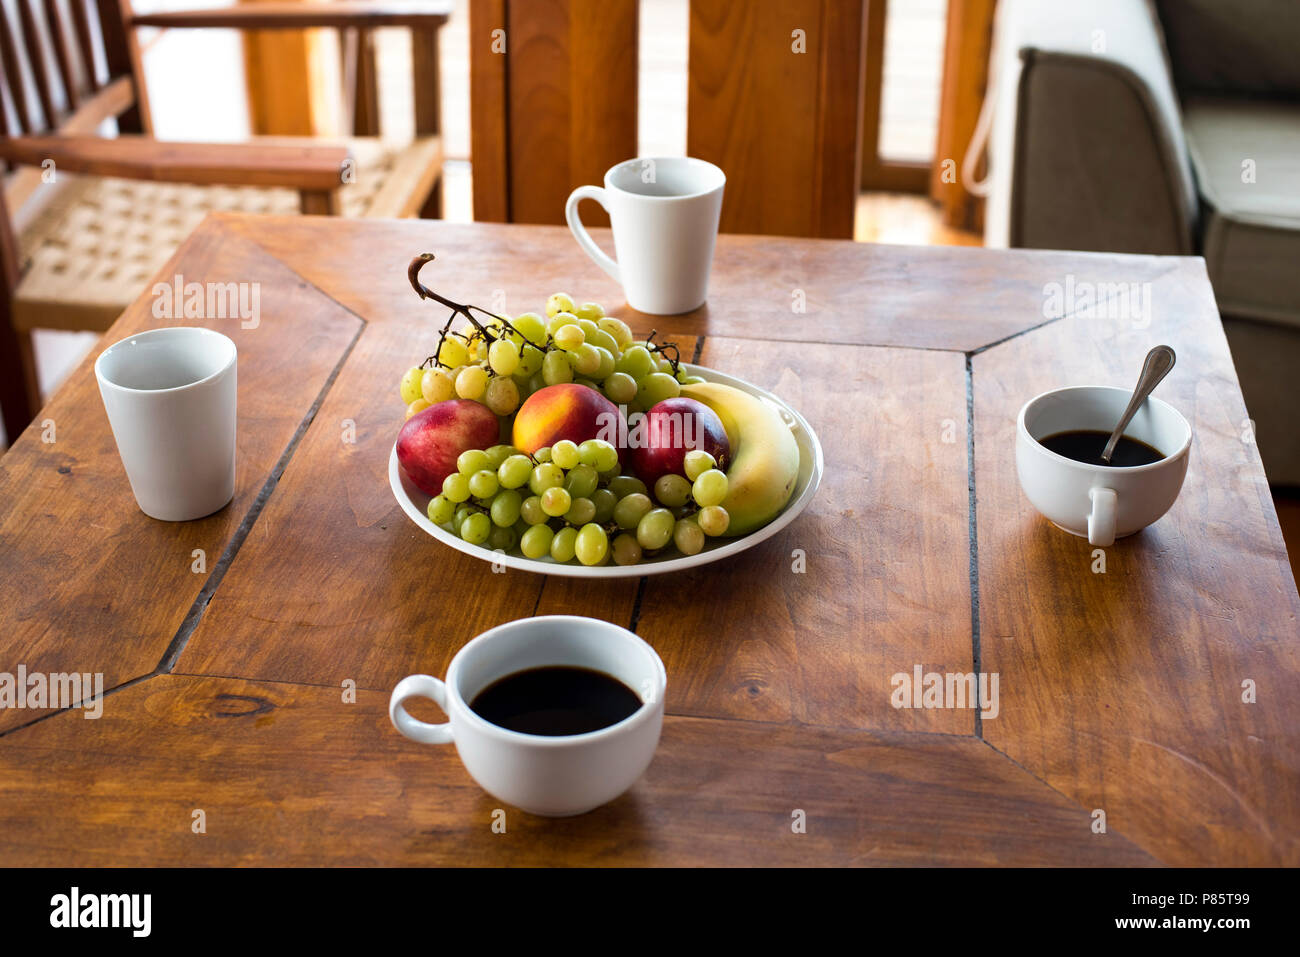 In estate il cibo al ristorante dell'hotel. Alimentazione sana con frutti: uva, mele, bevanda al caffè e pesca sul tavolo di legno. Foto Stock